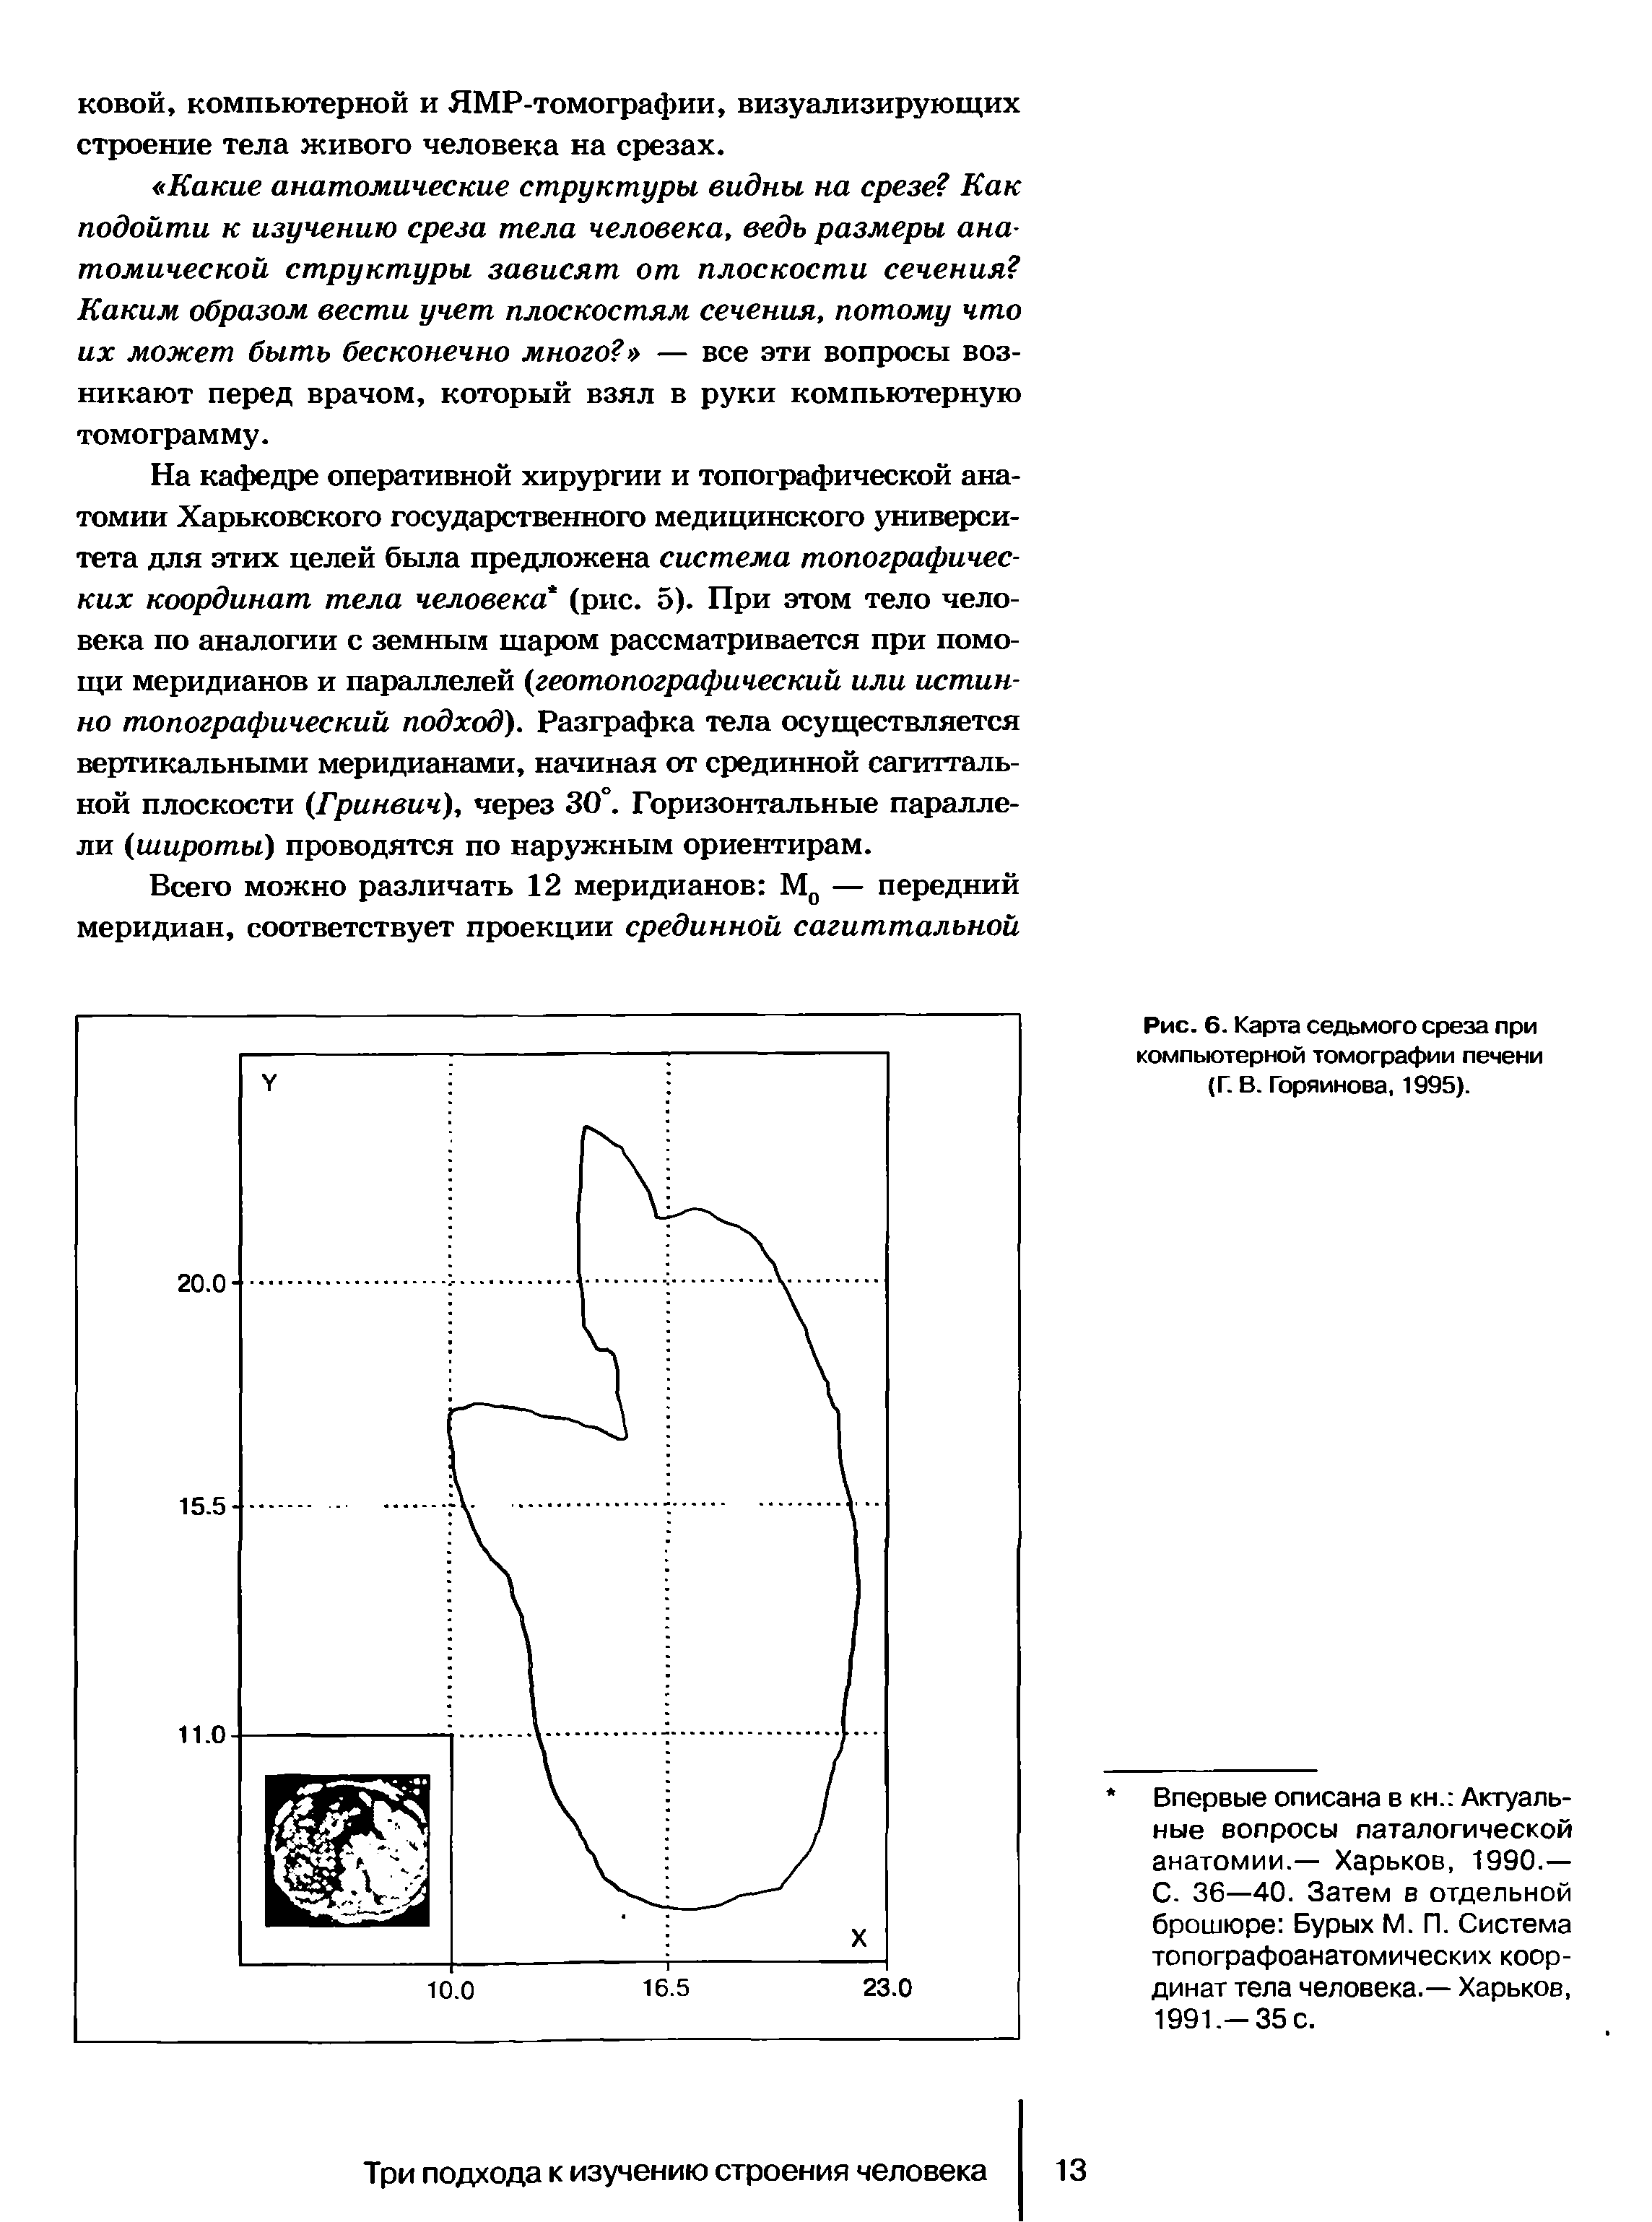 Рис. 6. Карта седьмого среза при компьютерной томографии печени (Г. В. Горяйнова, 1995).